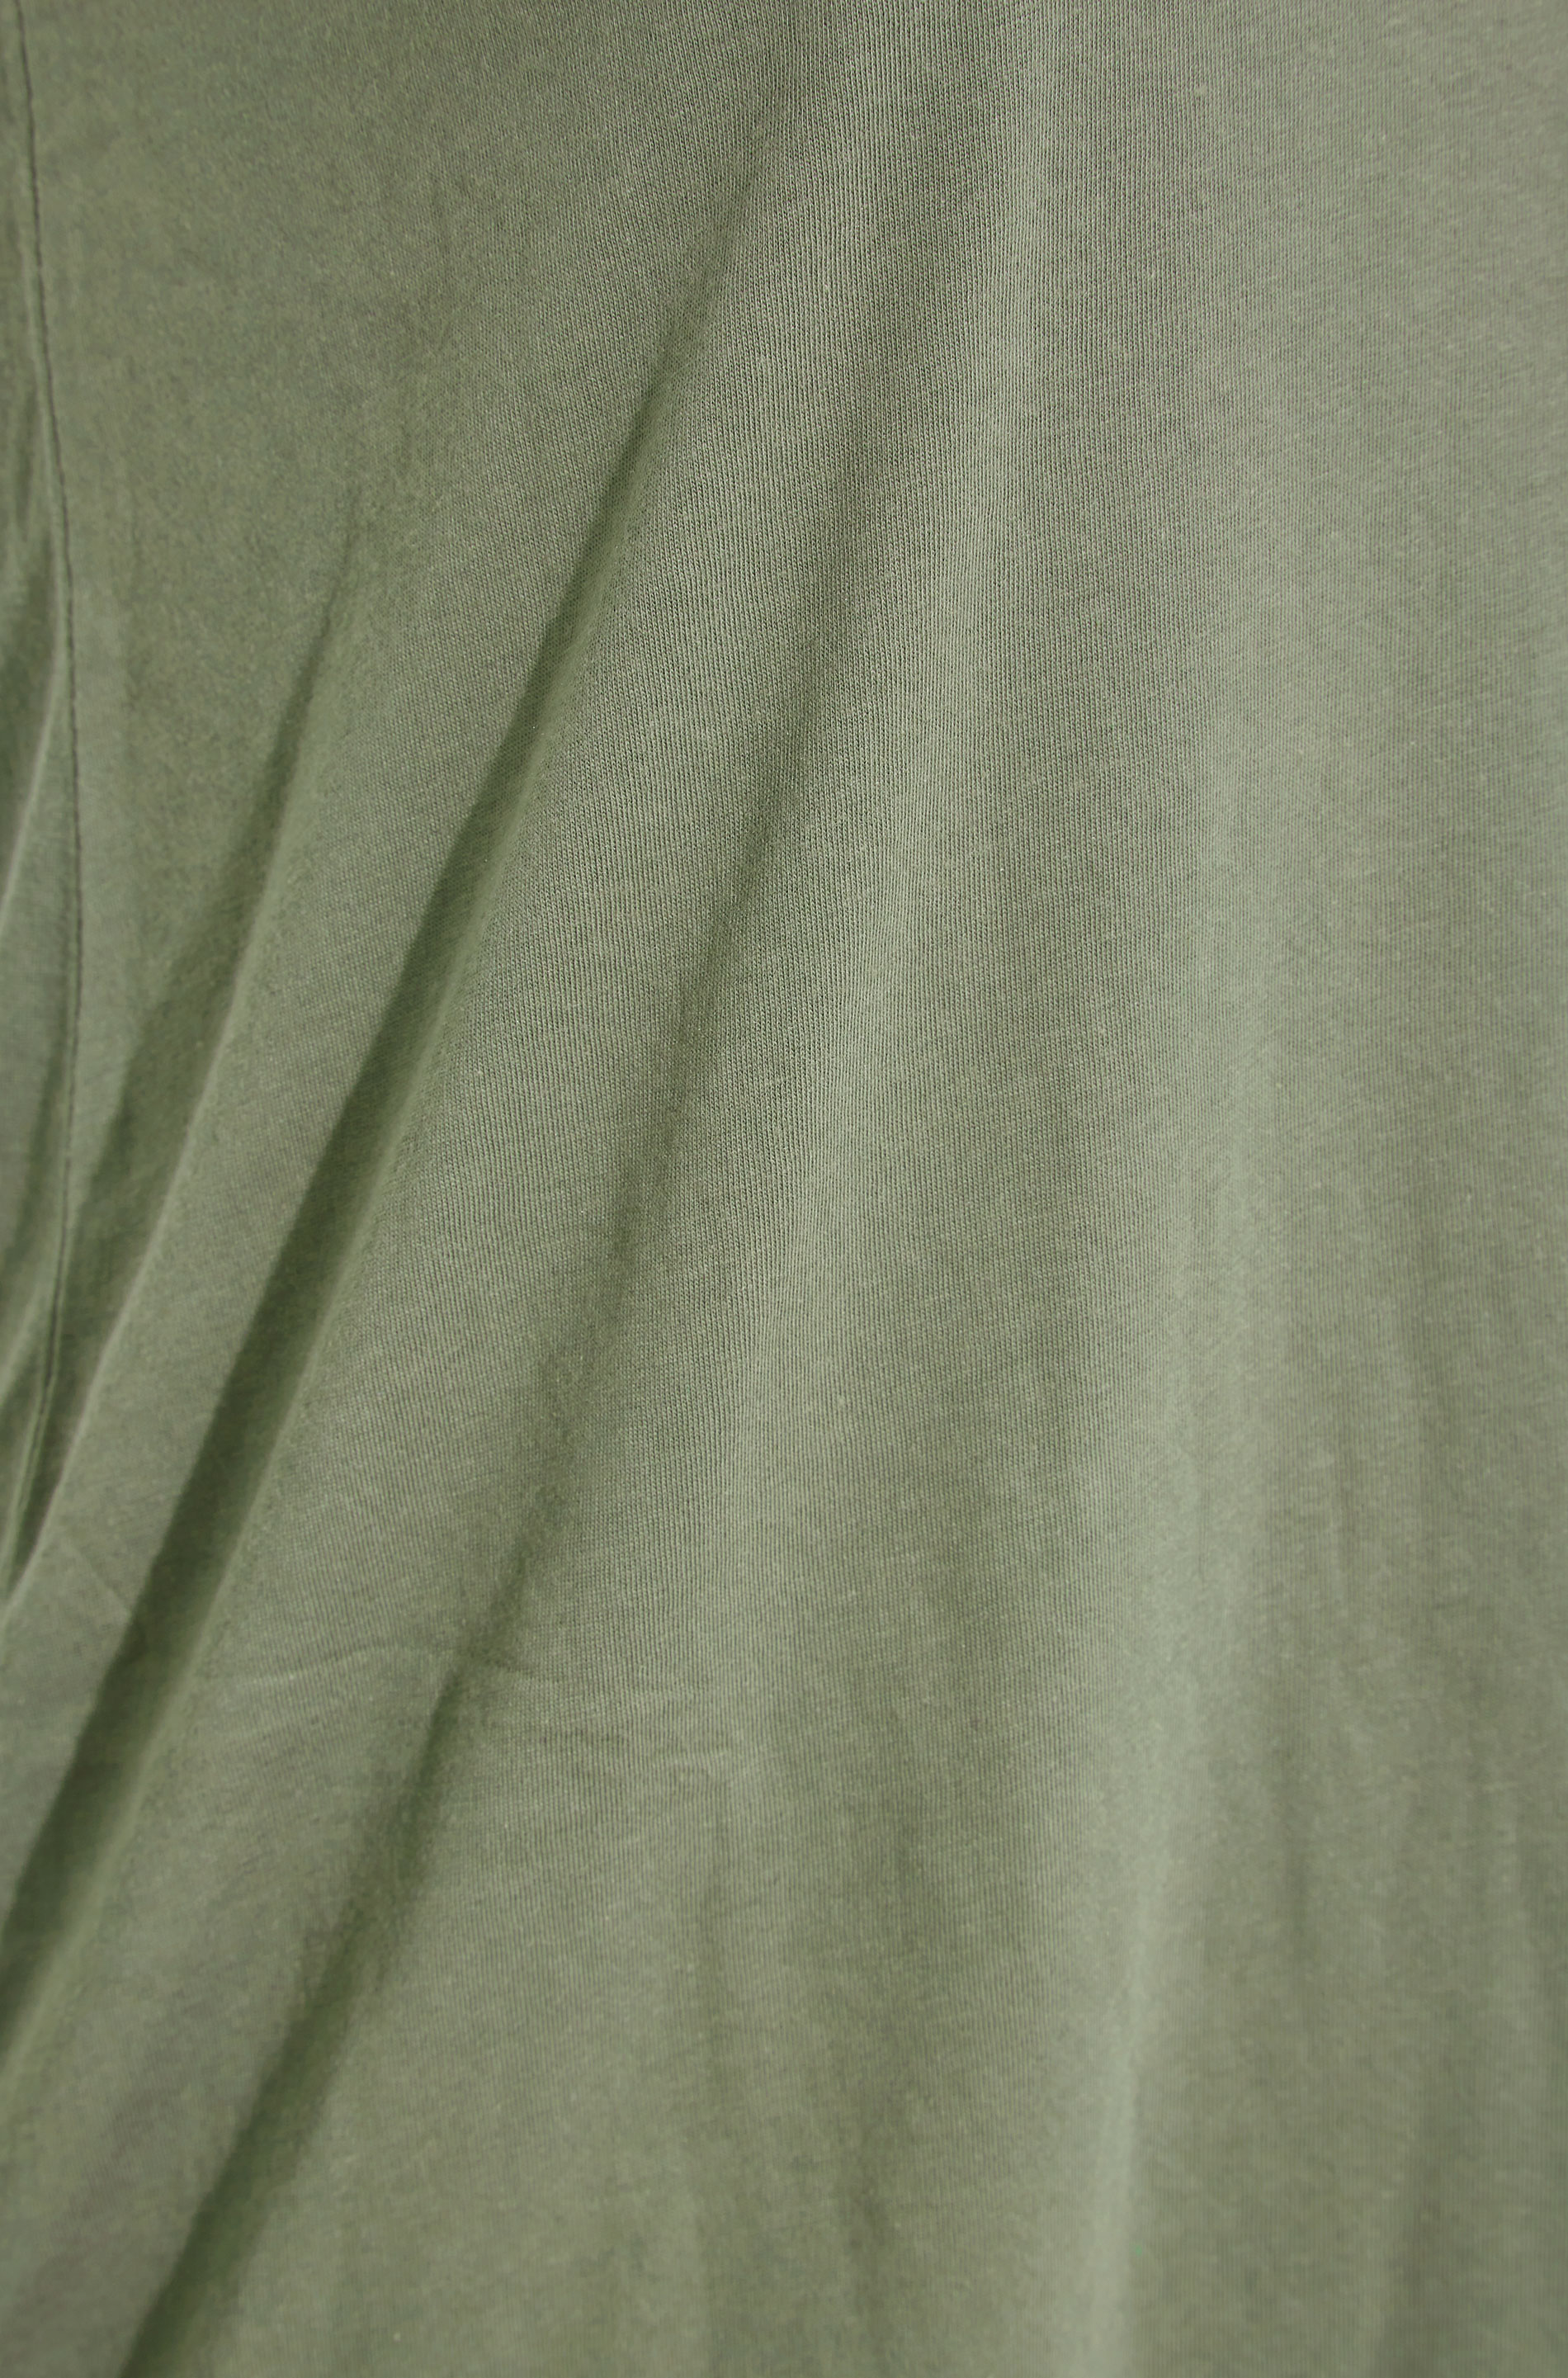 Grande taille  Tops Grande taille  T-Shirts Basiques & Débardeurs | Débardeur Jersey Vert Kaki - CX21095